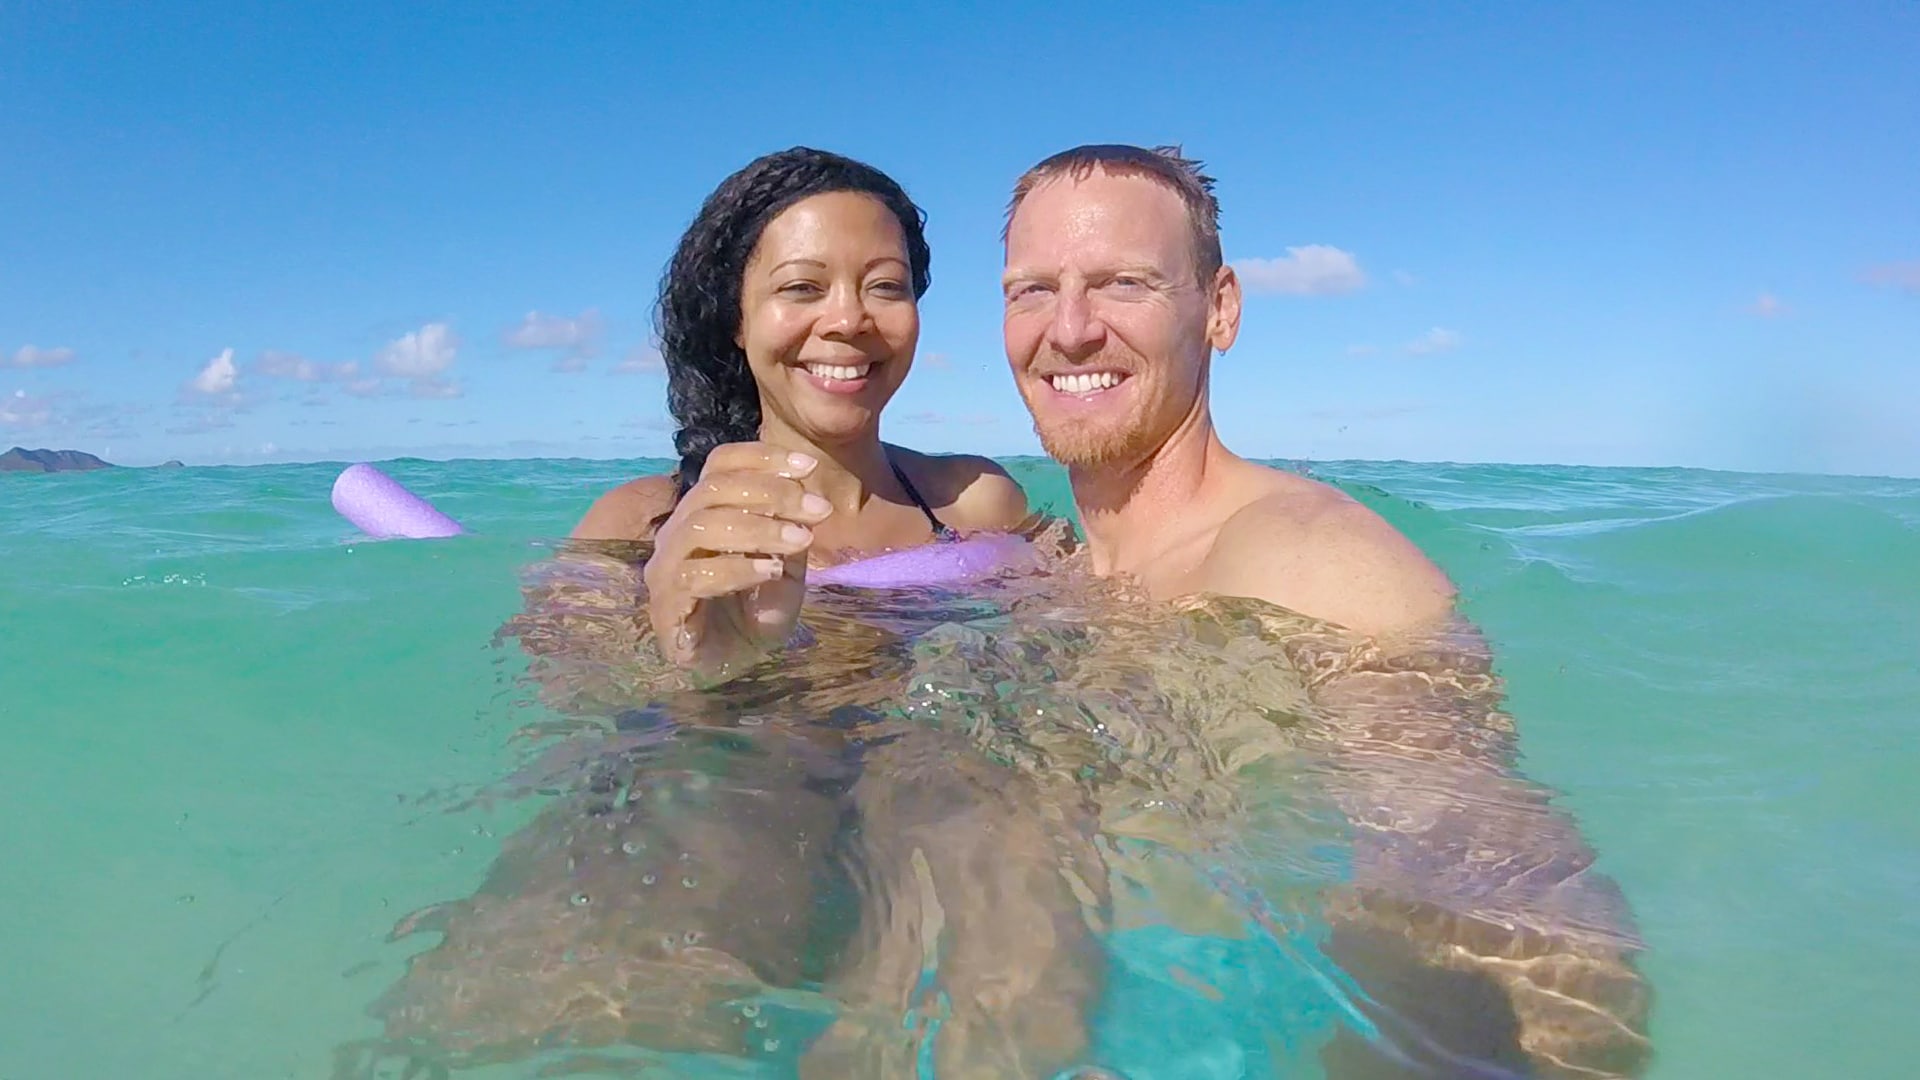 The writer, Joe, and his wife, Hailima, enjoy a swim off the coast of Oahu.